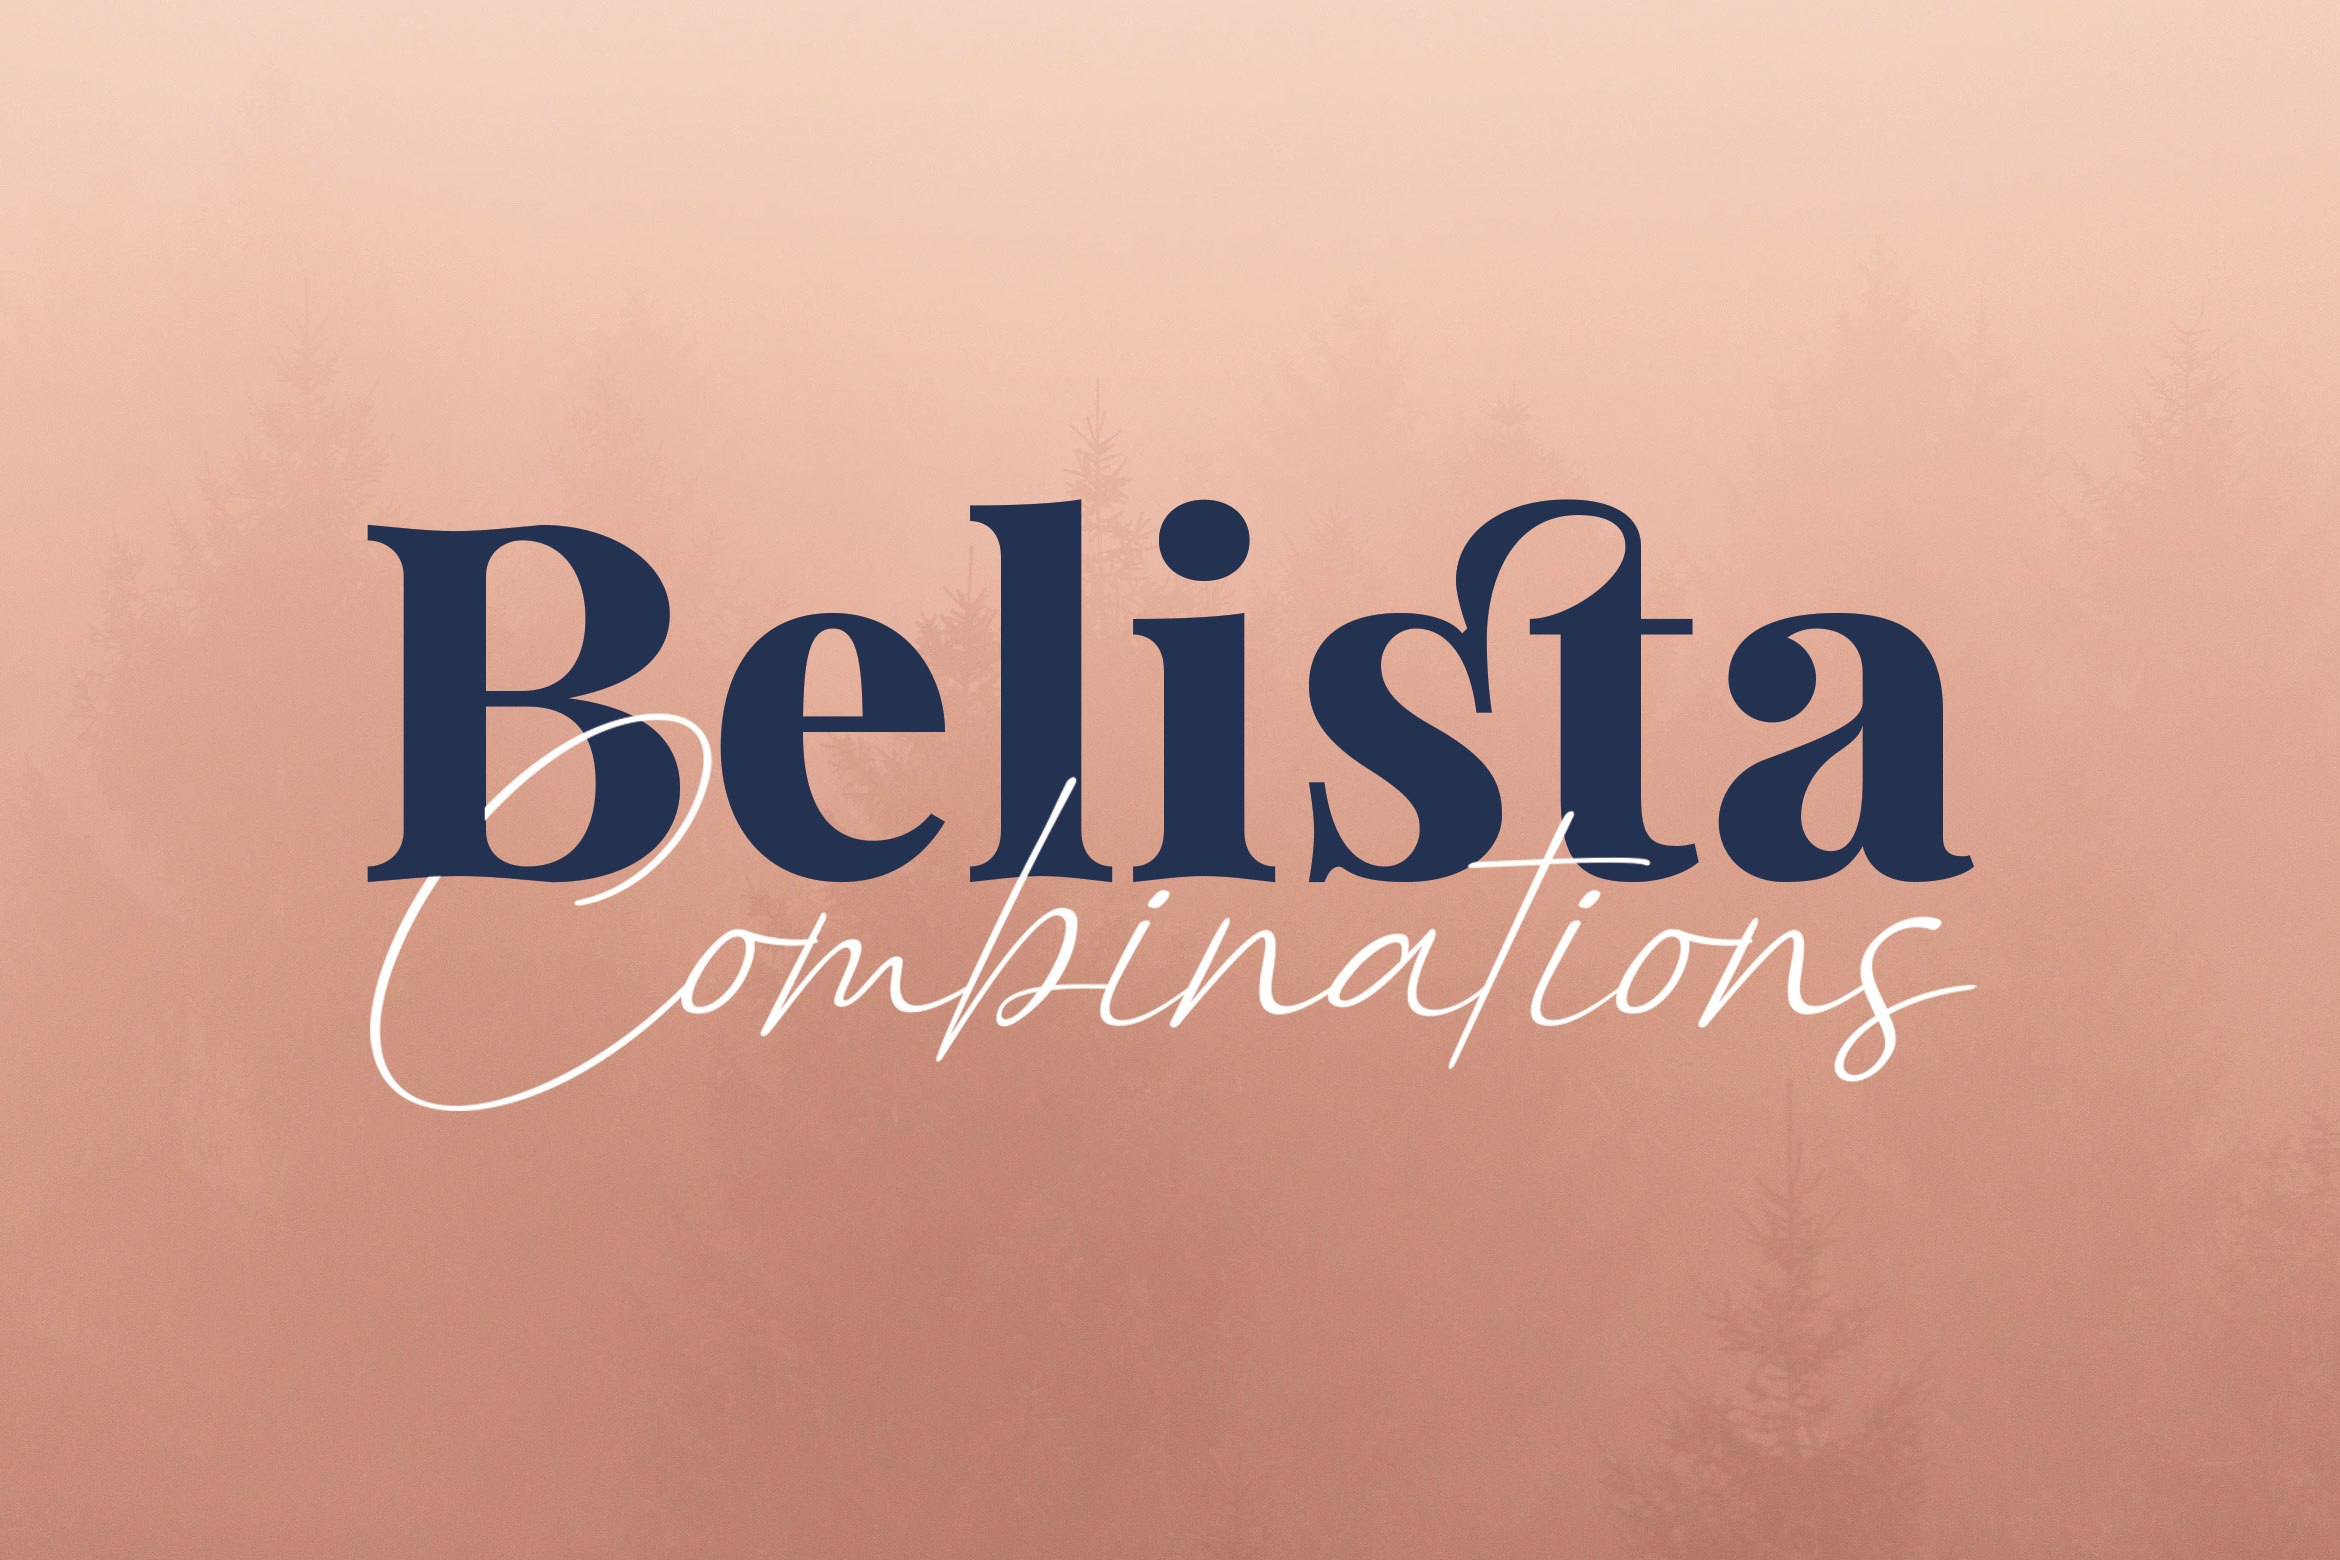 Example font Belista #1